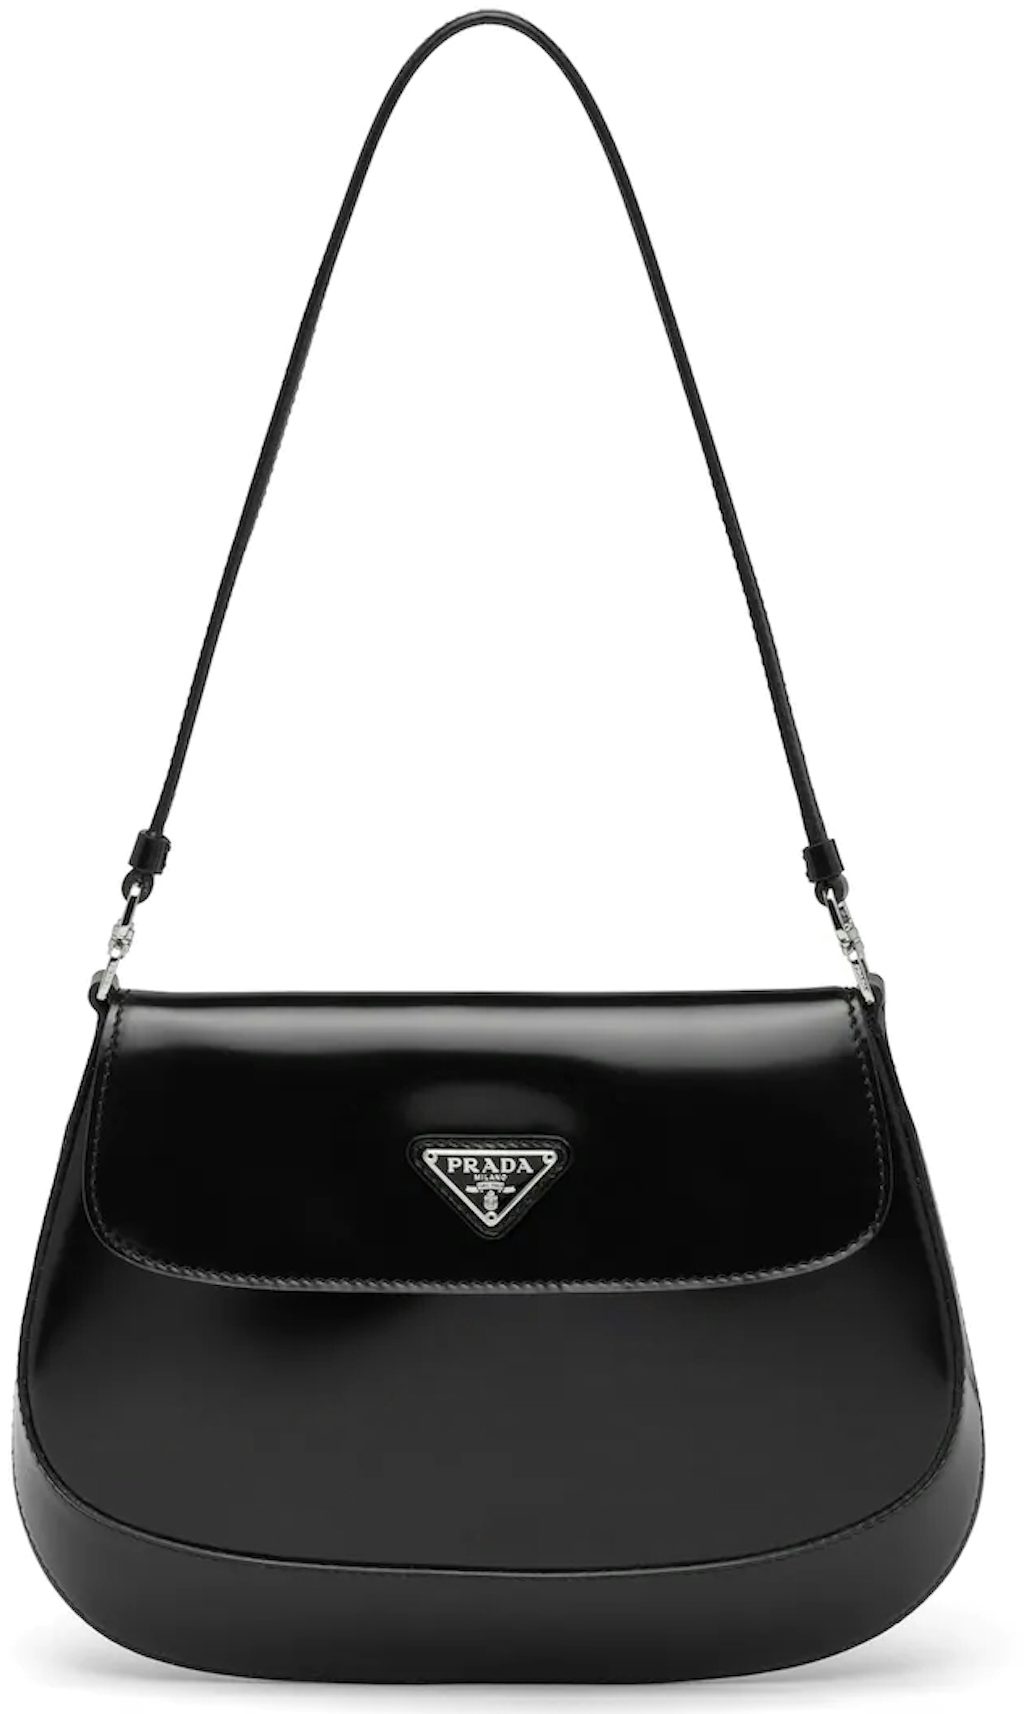 Prada Cleo Shoulder Bag with Flap Black